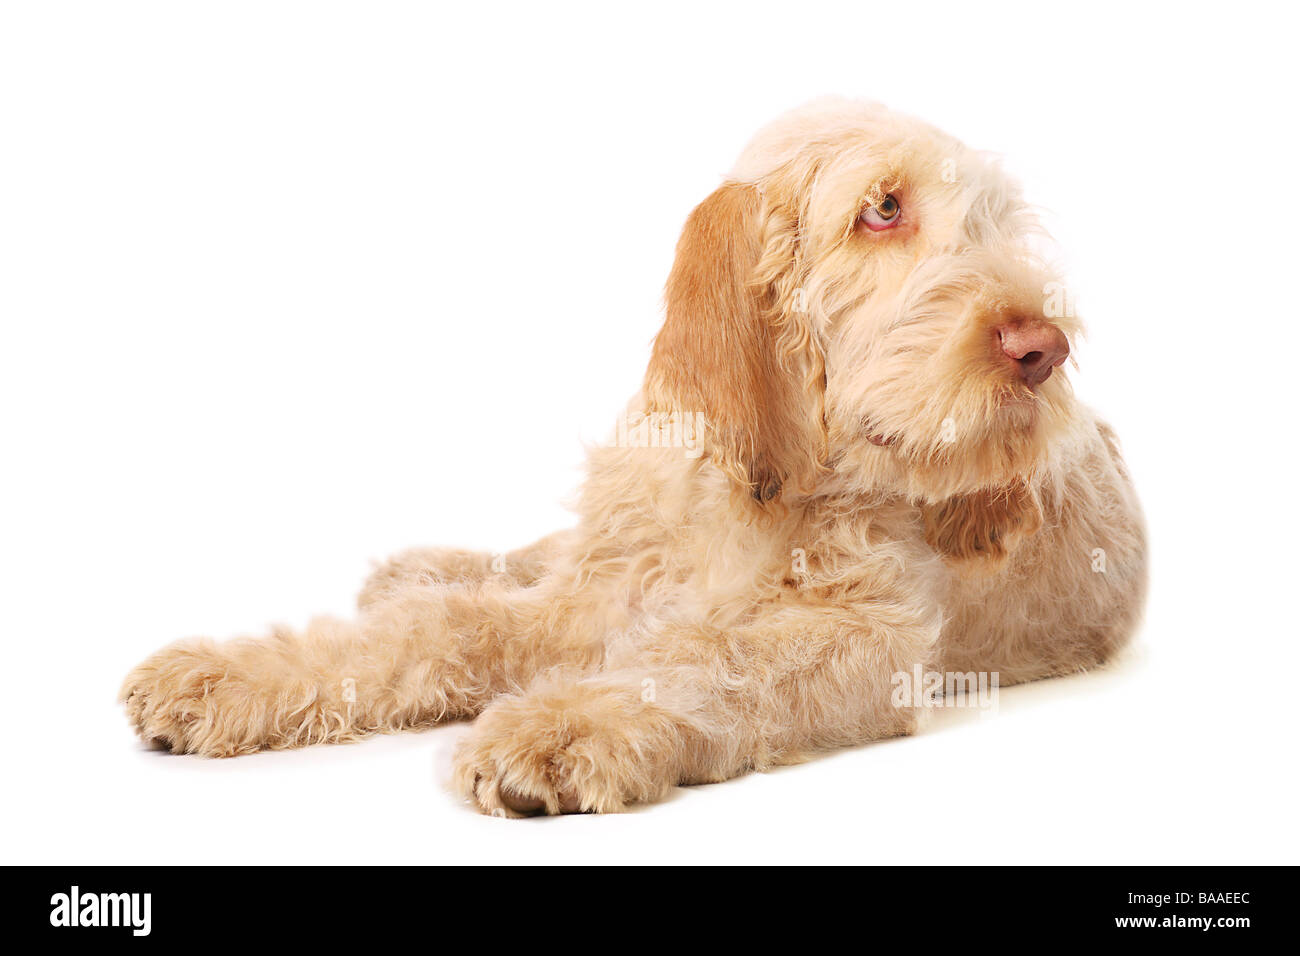 spinone italiano dog Stock Photo